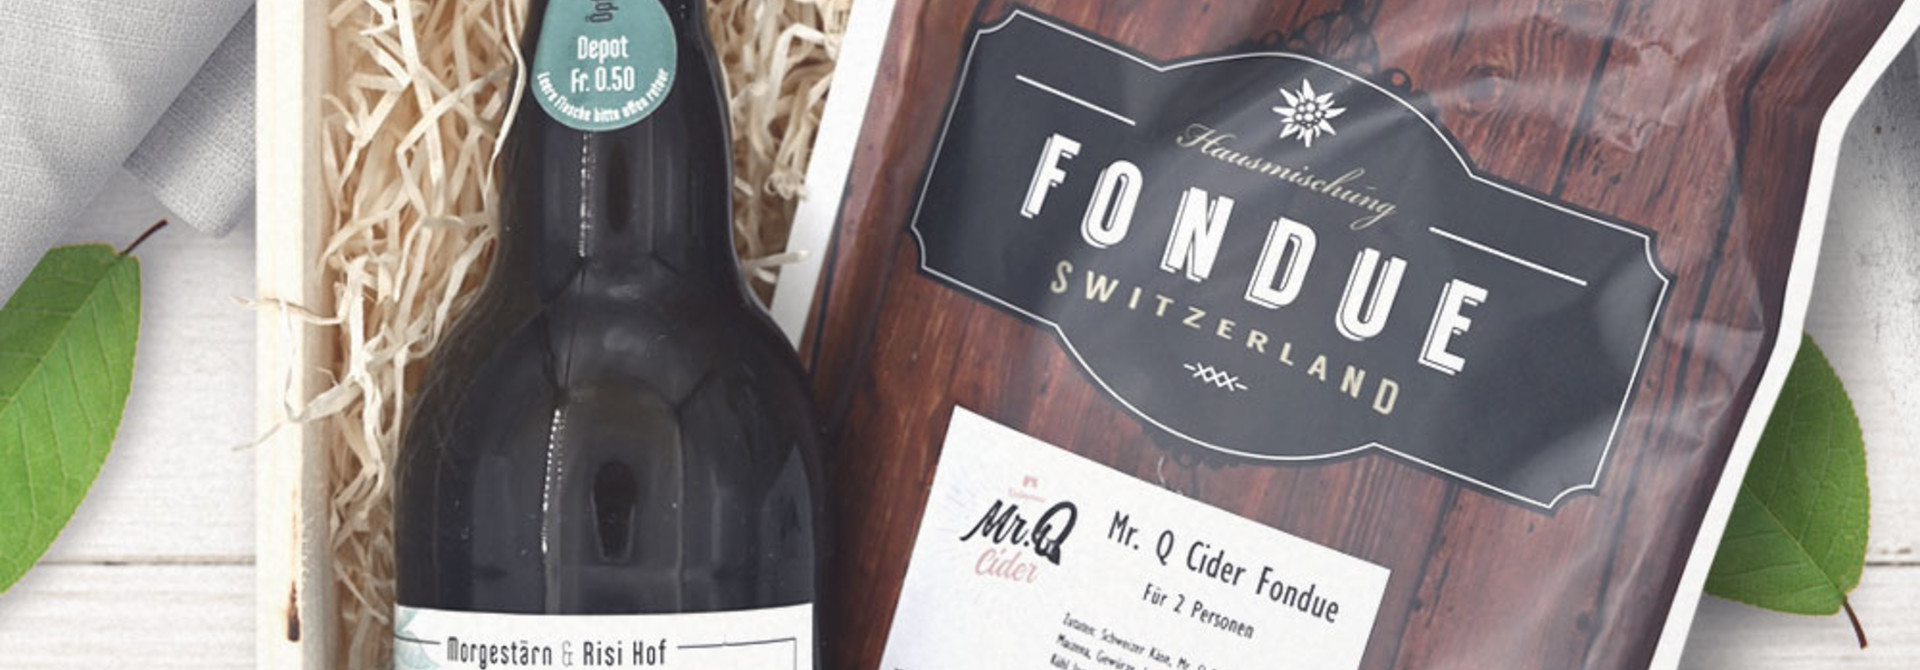 Mr. Q Geschenkset «Öpfu Cider & Fondue» in Geschenkharasse